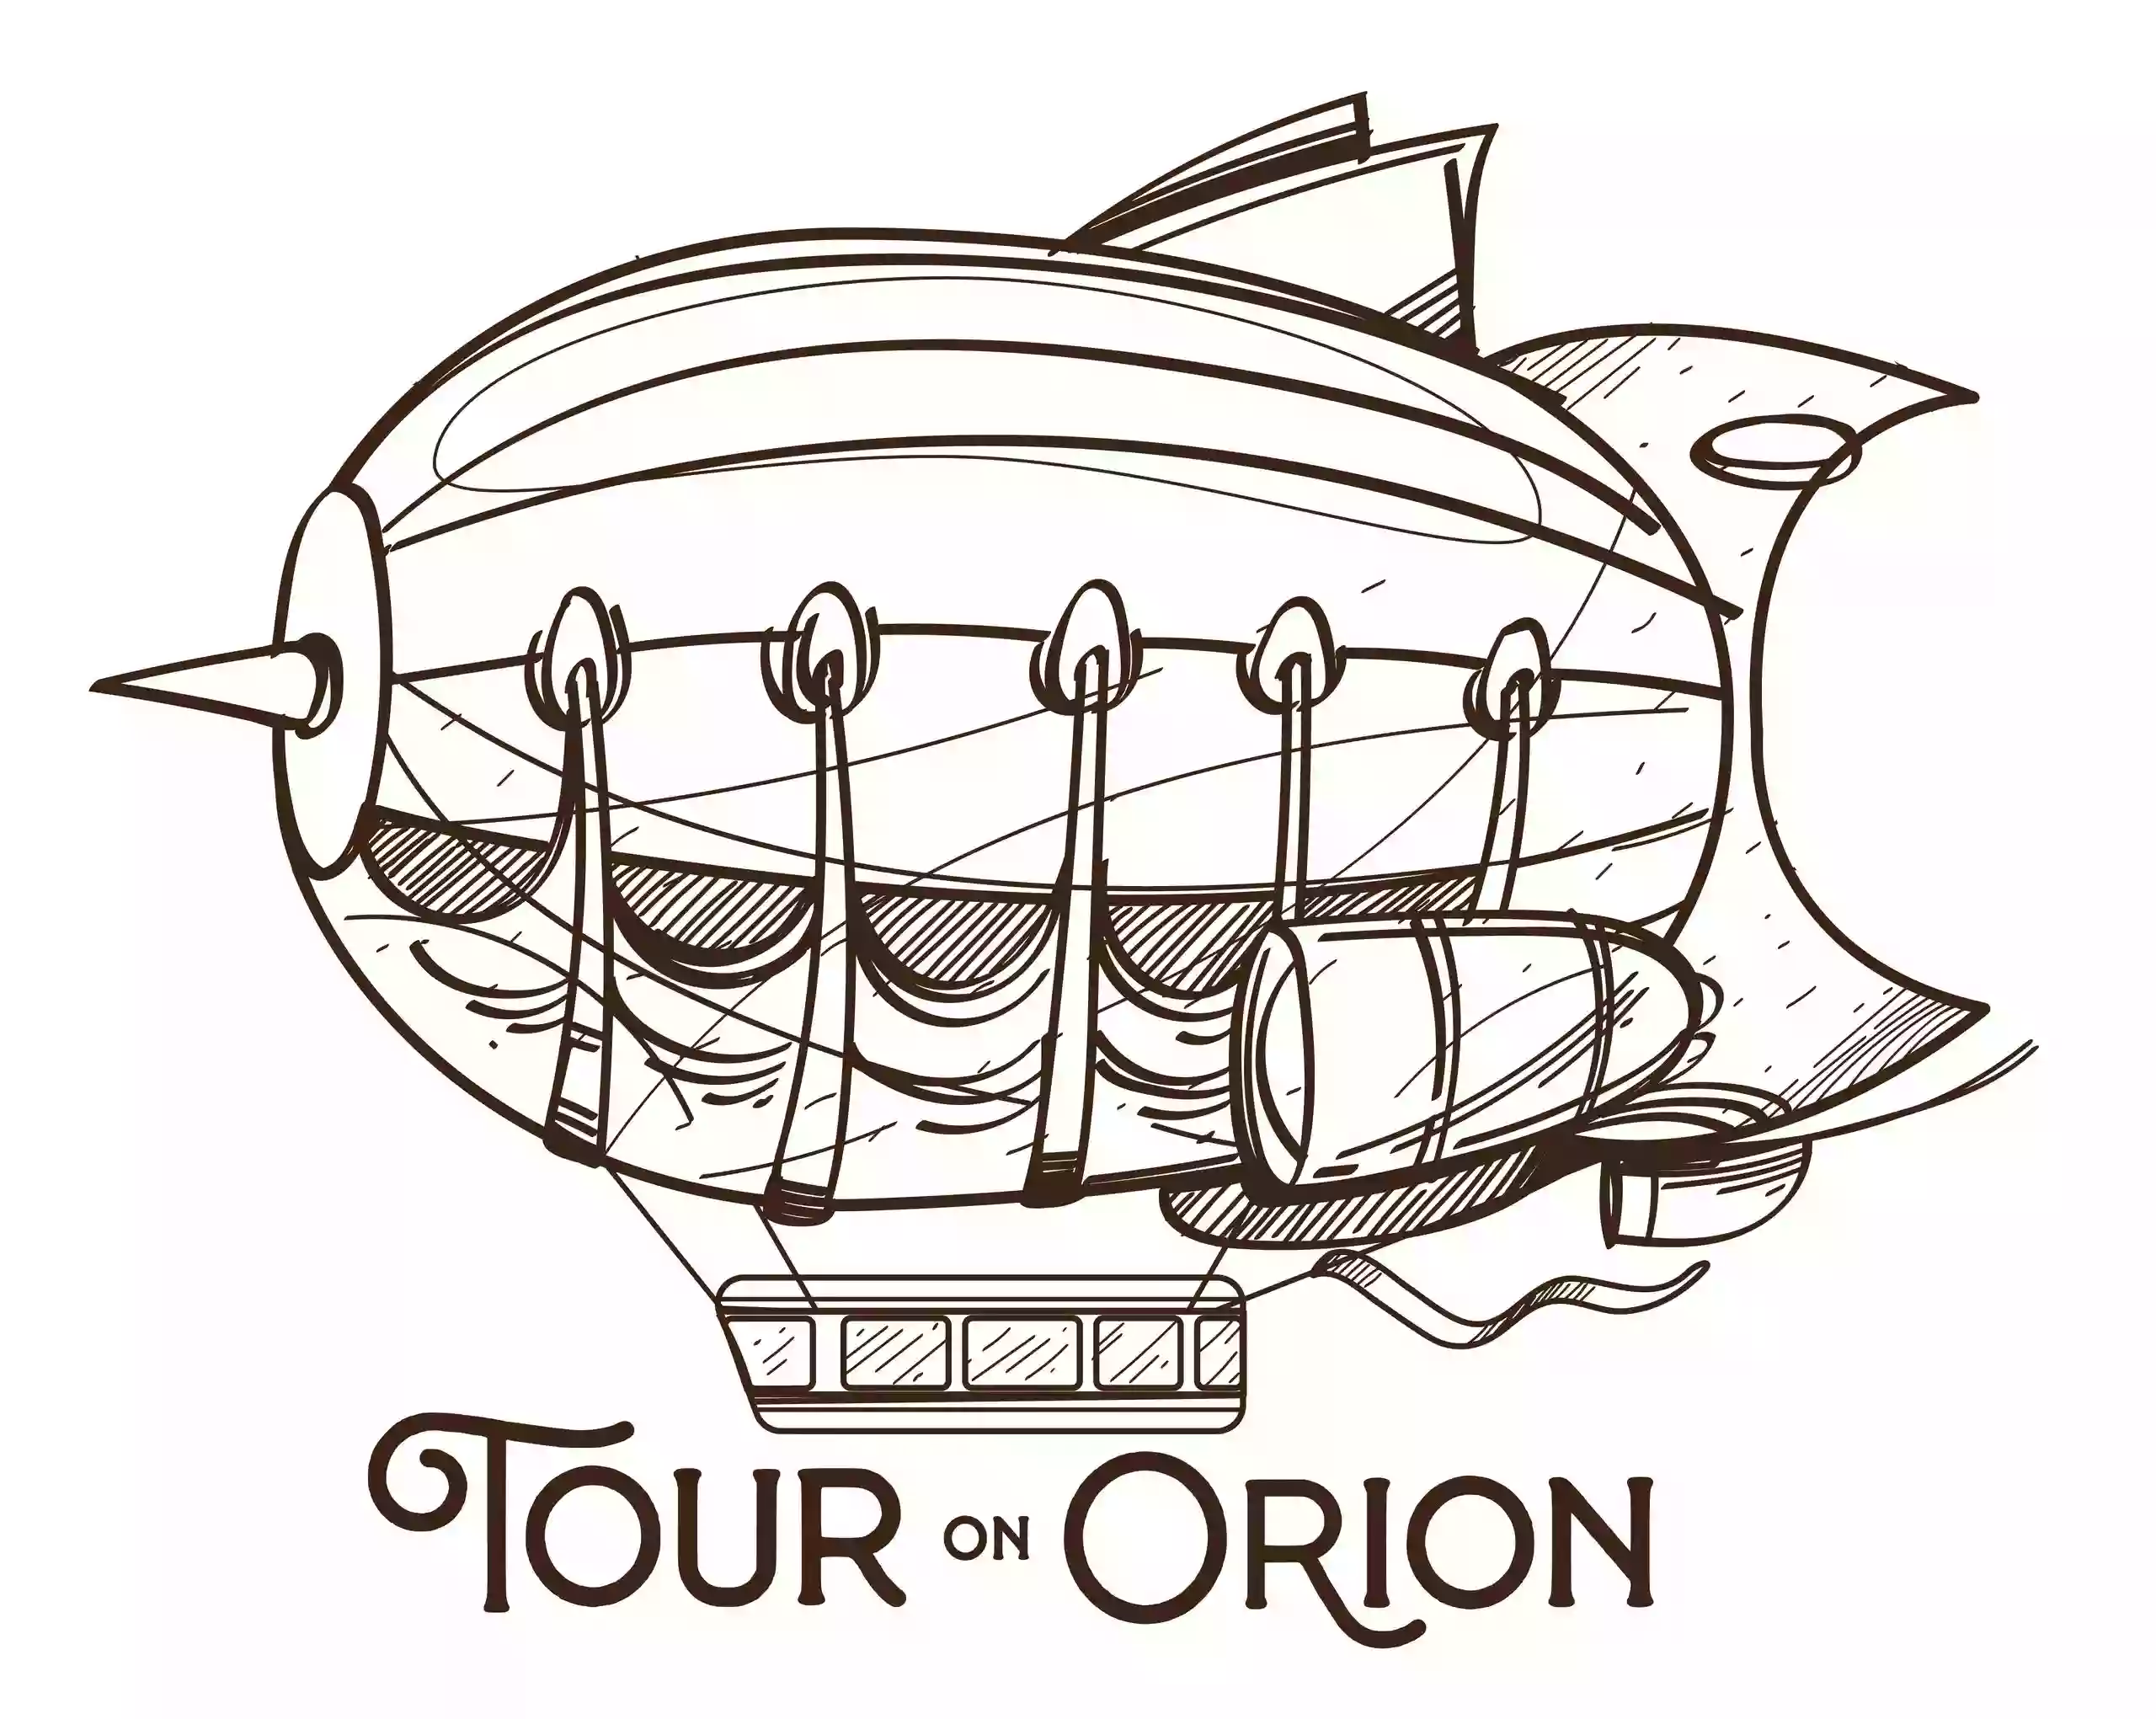 Tour on Orion